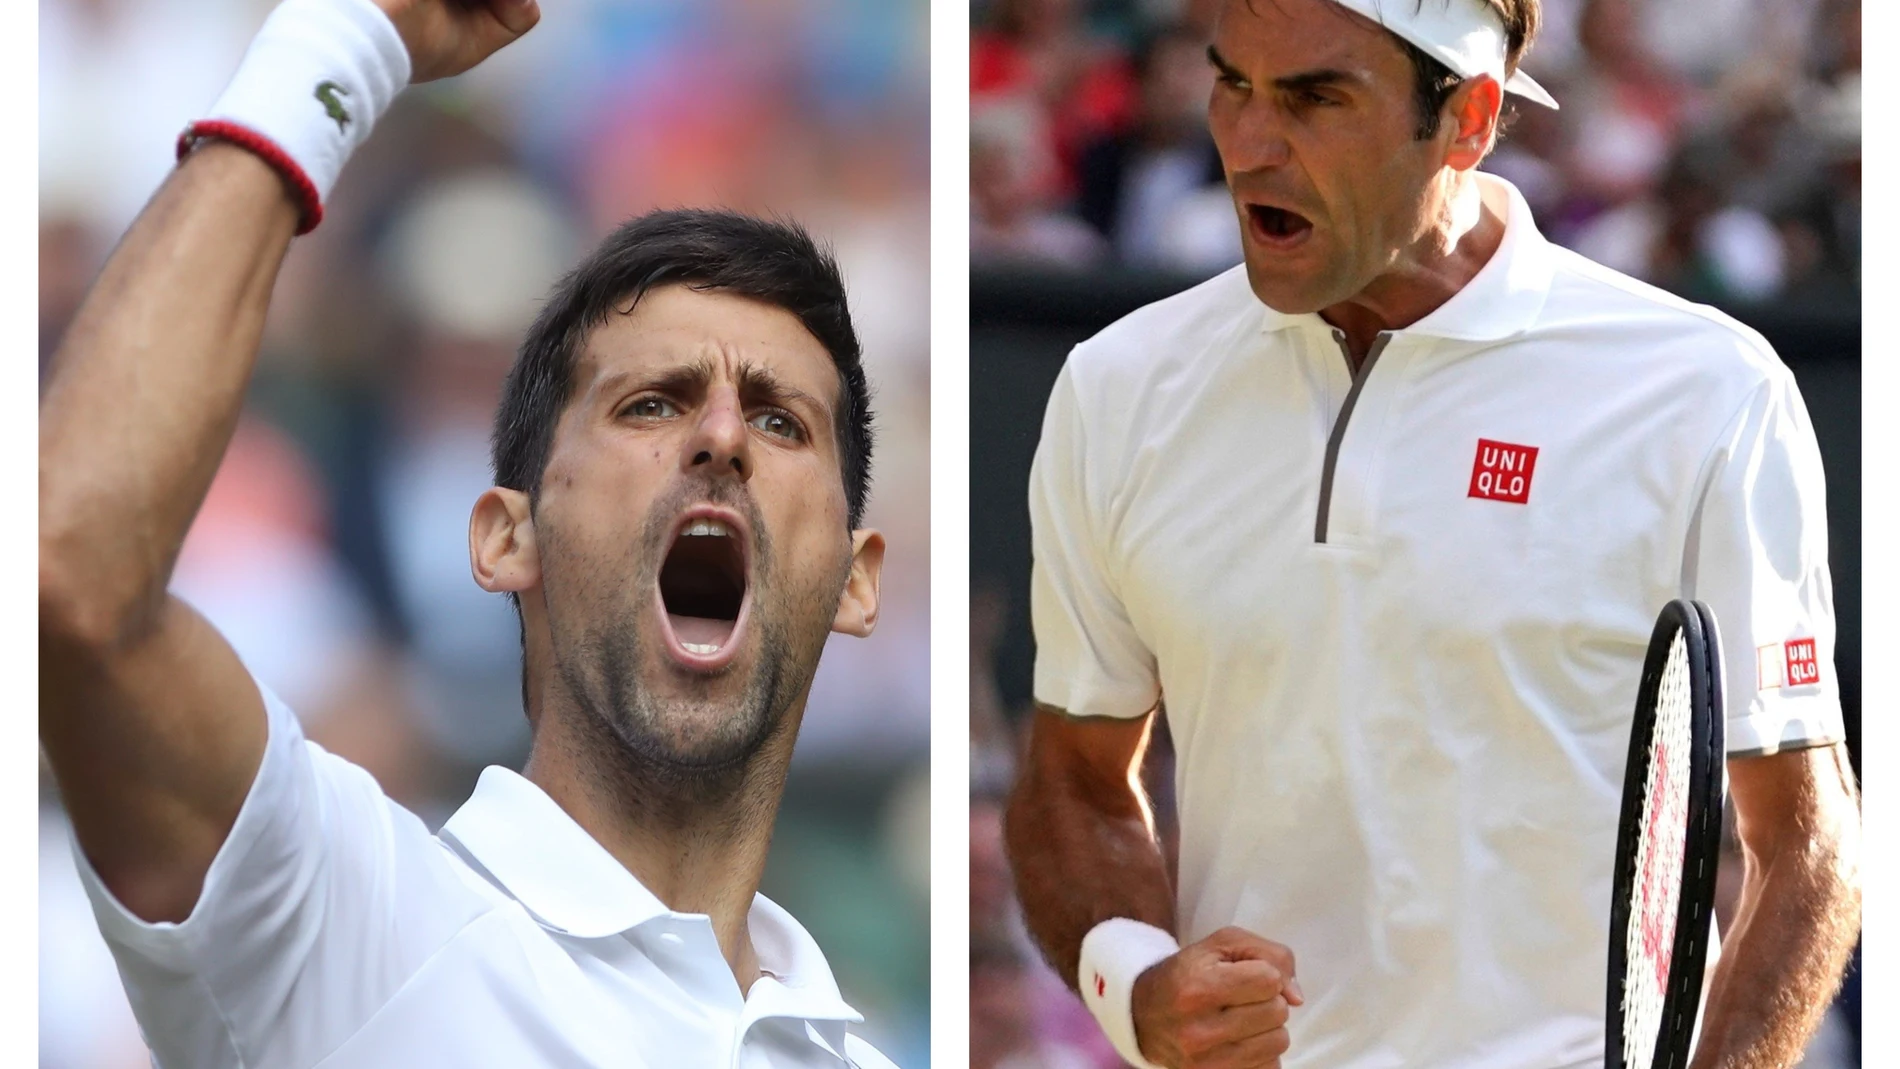 Final de Wimbledon 2019: Djokovic- Federer